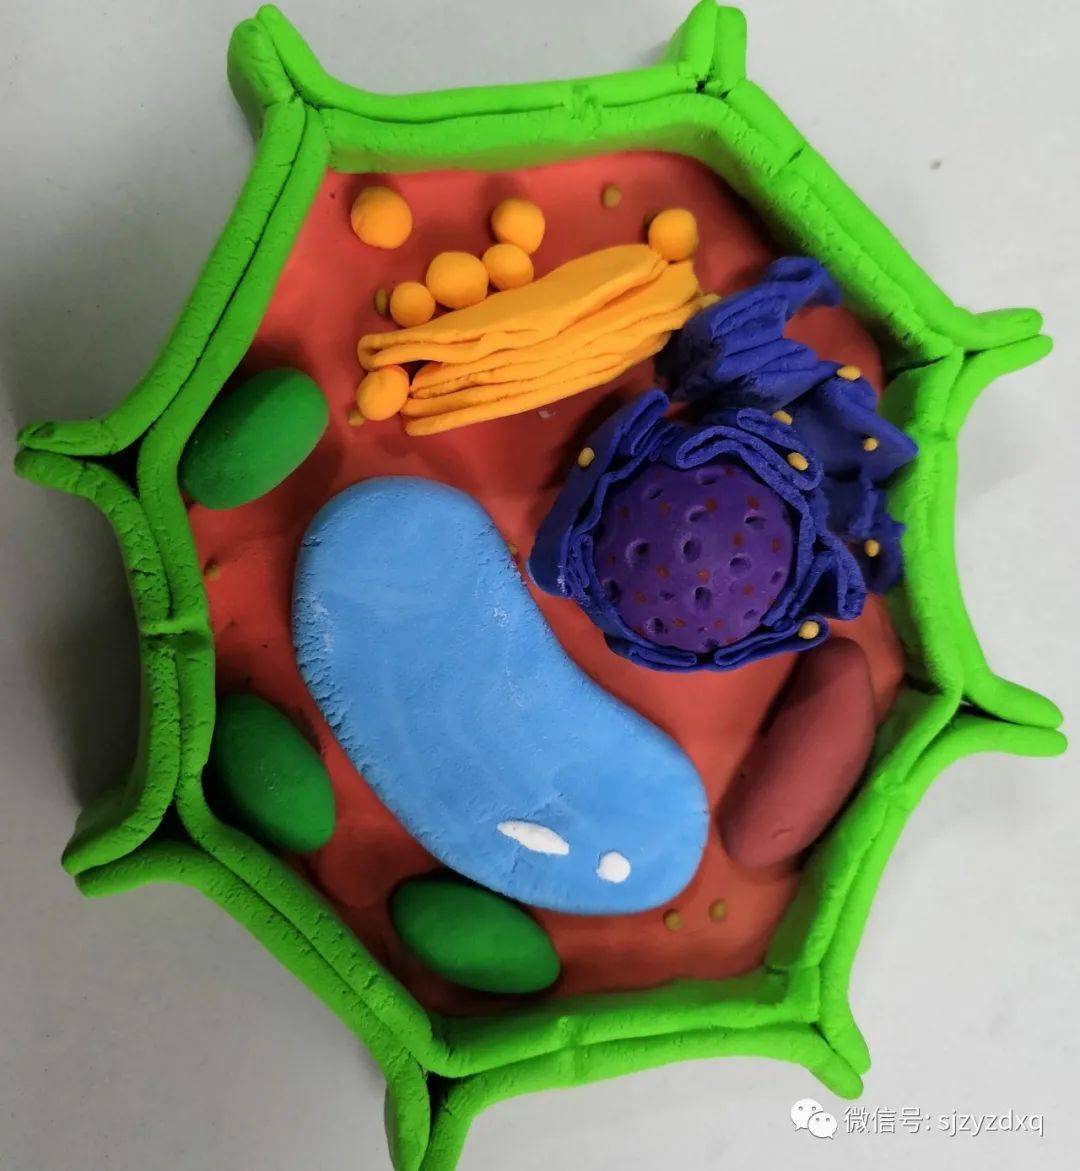 如动植物细胞模型,细胞膜结构模型和细菌模型等.